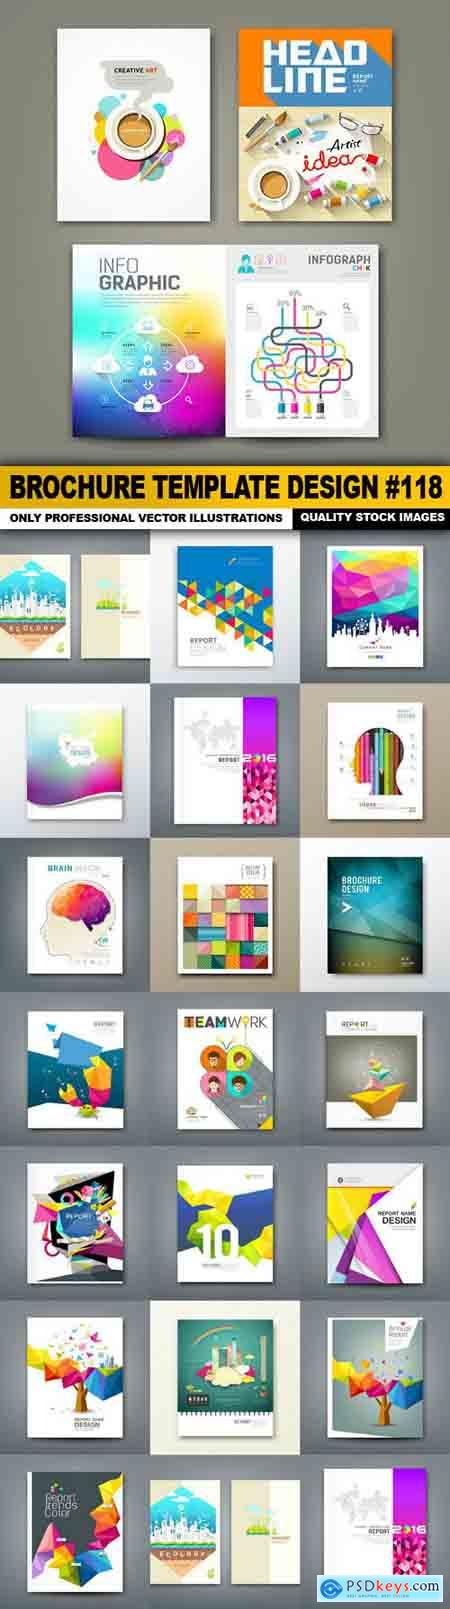 Brochure Template Design #118 - 20 Vector